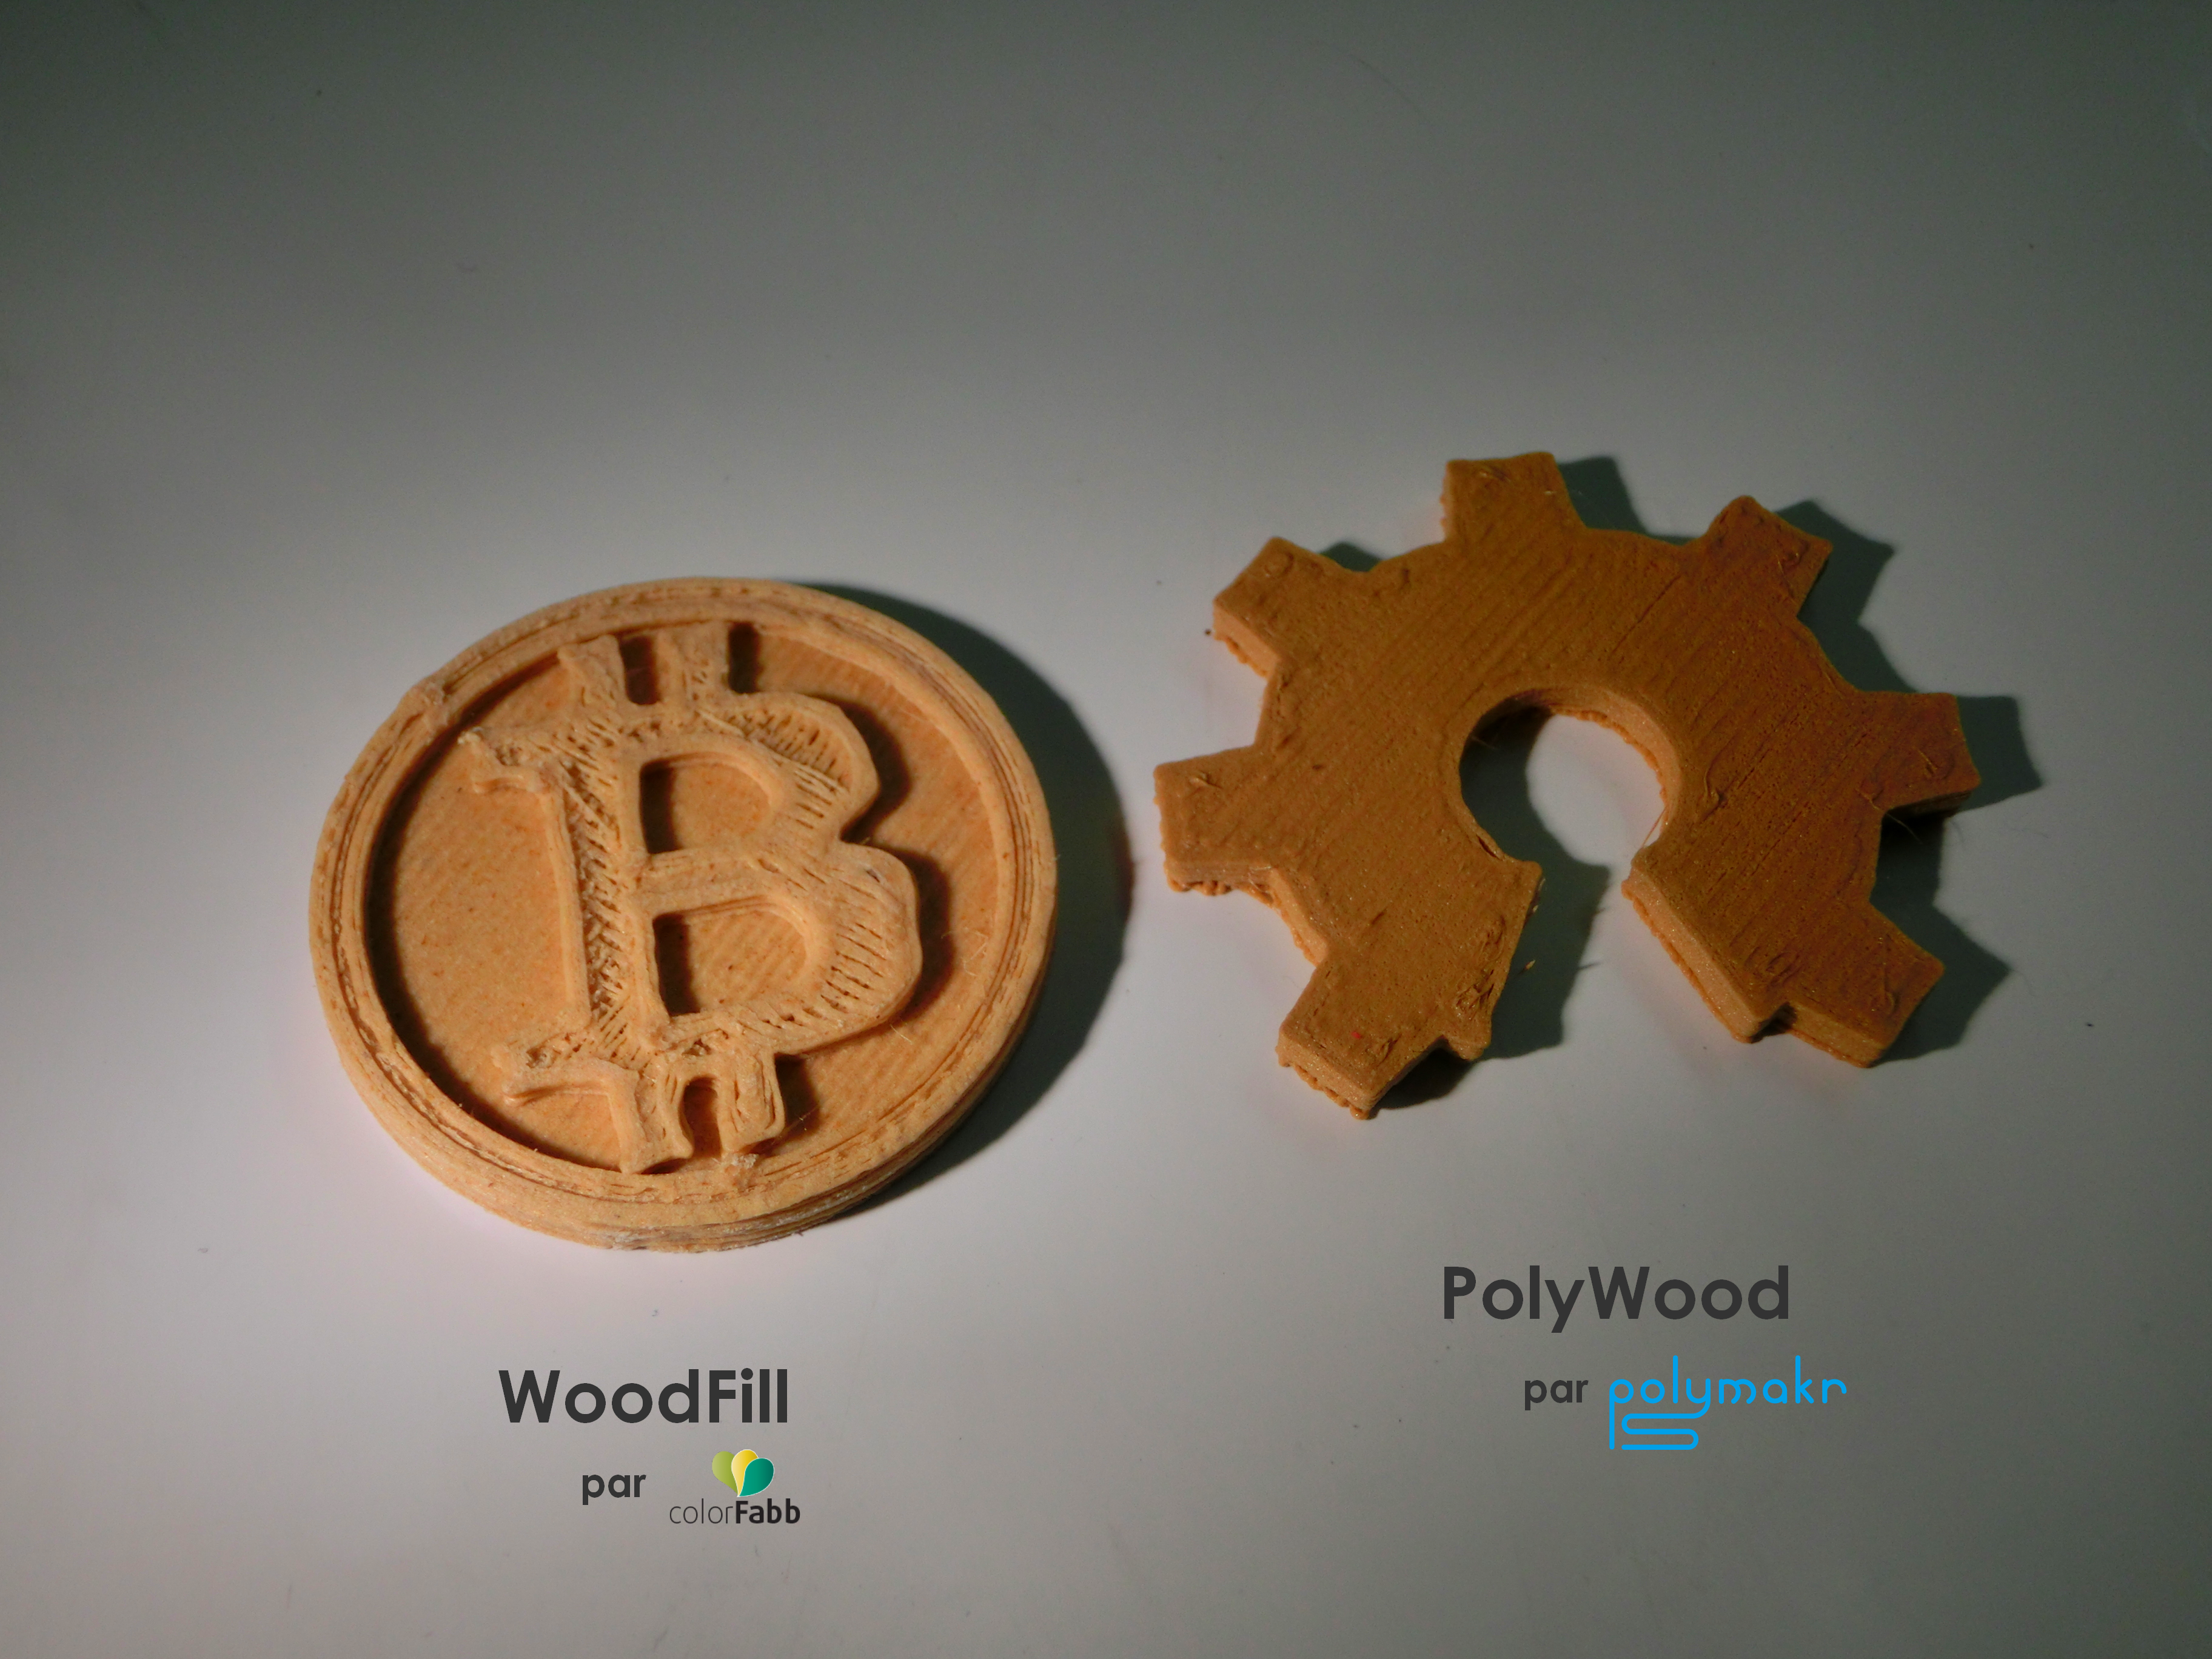 Filament 3D PLA Bois – L'Authenticité du Bois dans Vos Impressions 3D